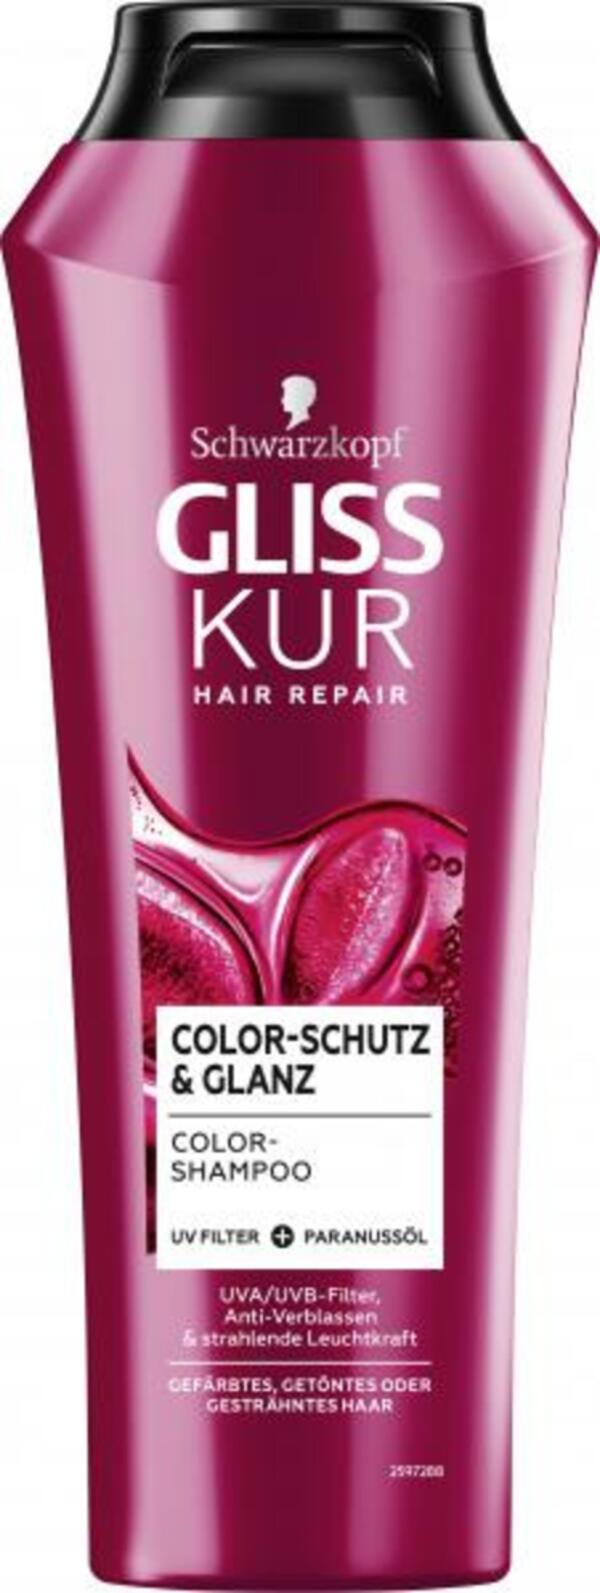 Bild 1 von Schwarzkopf Gliss Kur Shampoo Color-Schutz & Glanz